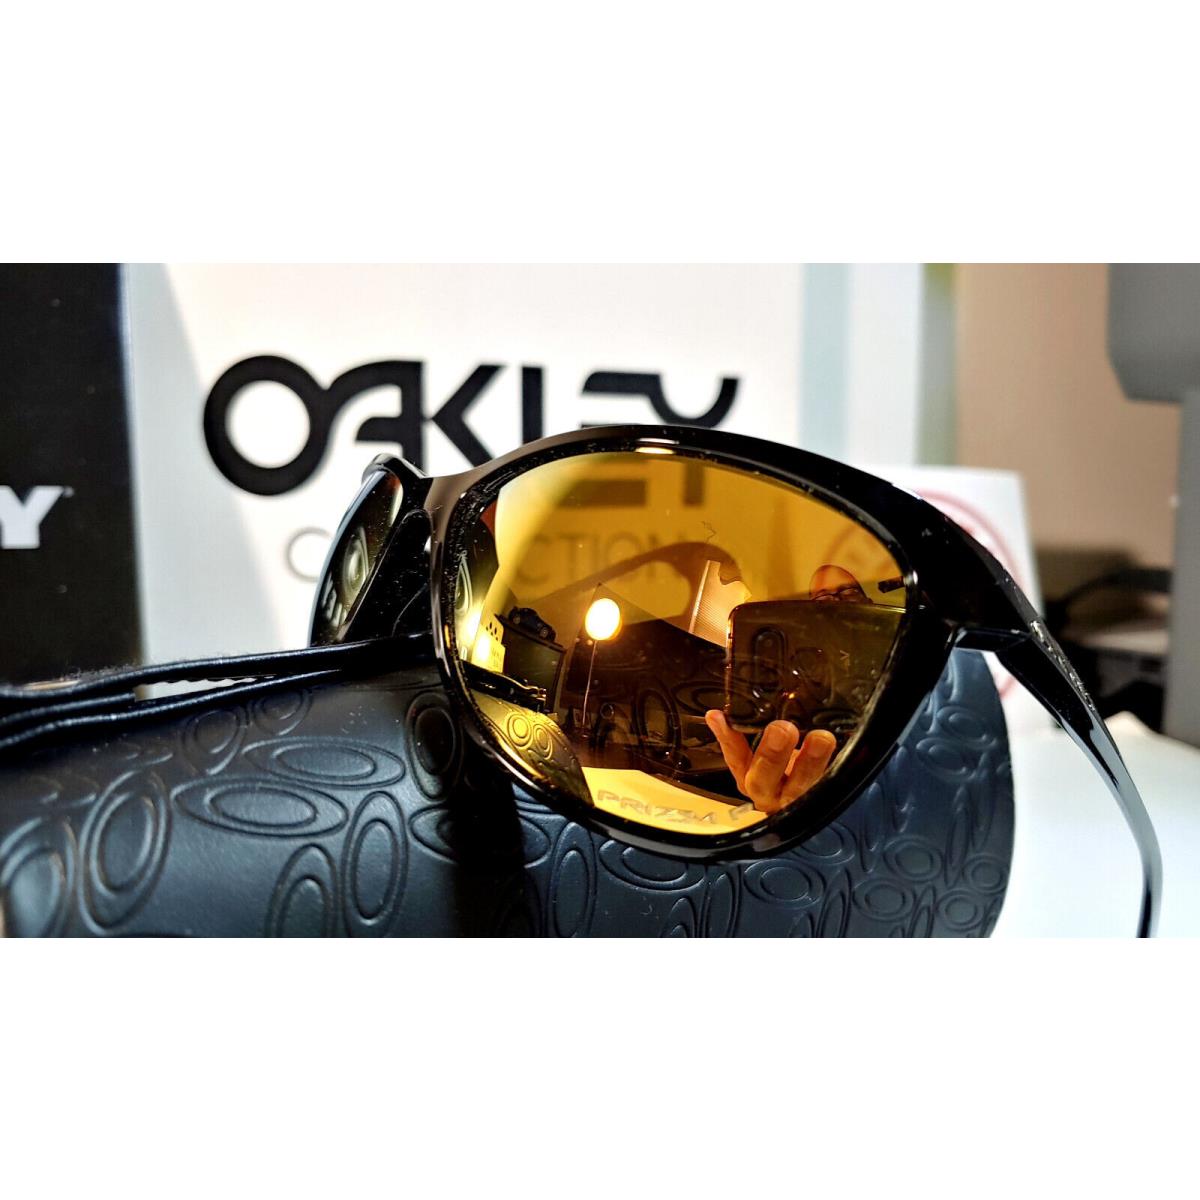 Oakley sunglasses  - Black Frame, Rose Gold Lens 2